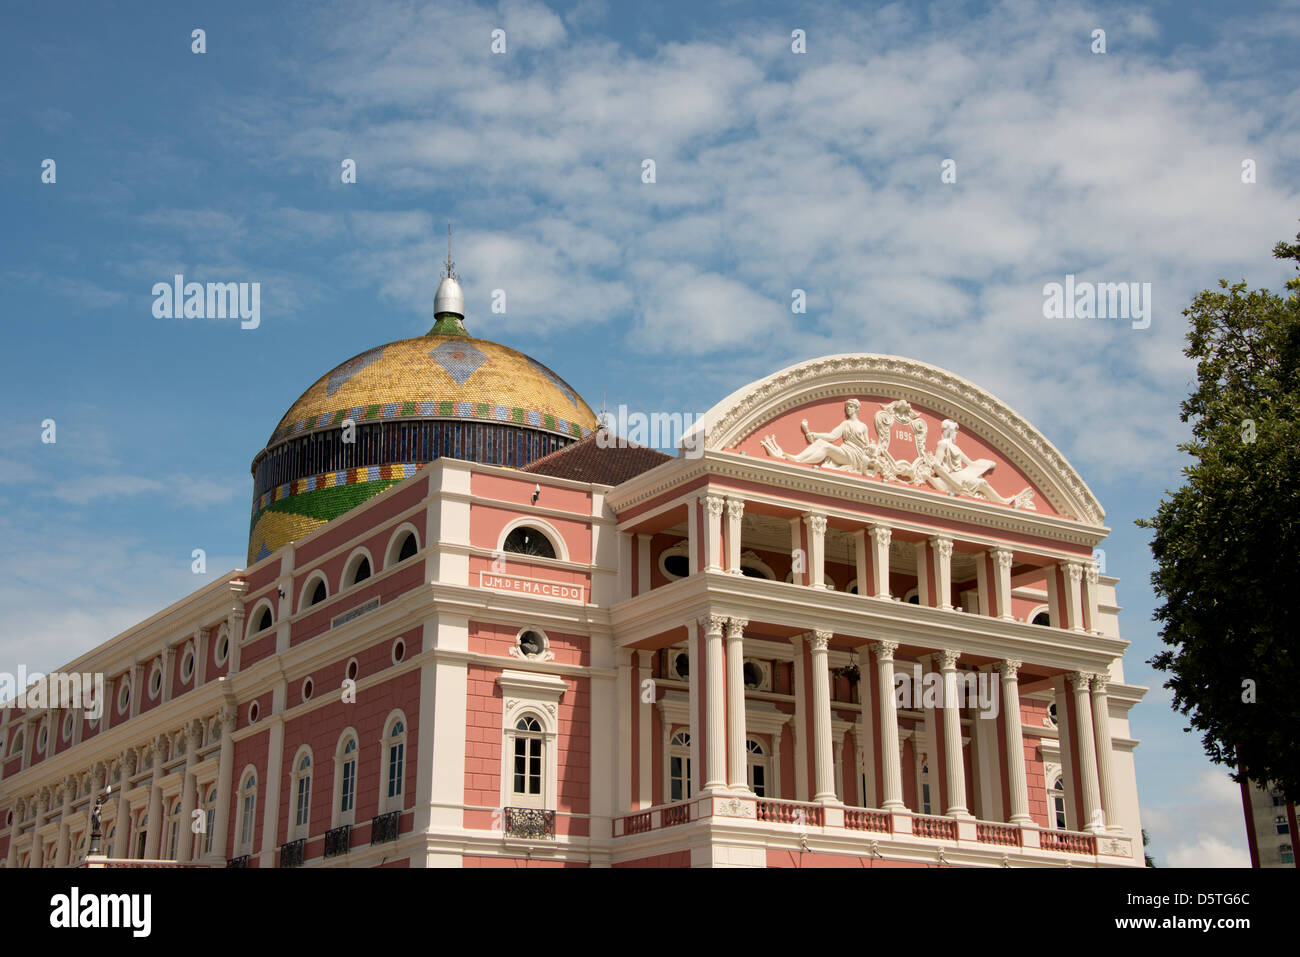 Le Brésil, l'Amazonie, Manaus. Manaus historique Opera House (aka Teatro Amazonas), vers 1882, construit en style néoclassique. Banque D'Images